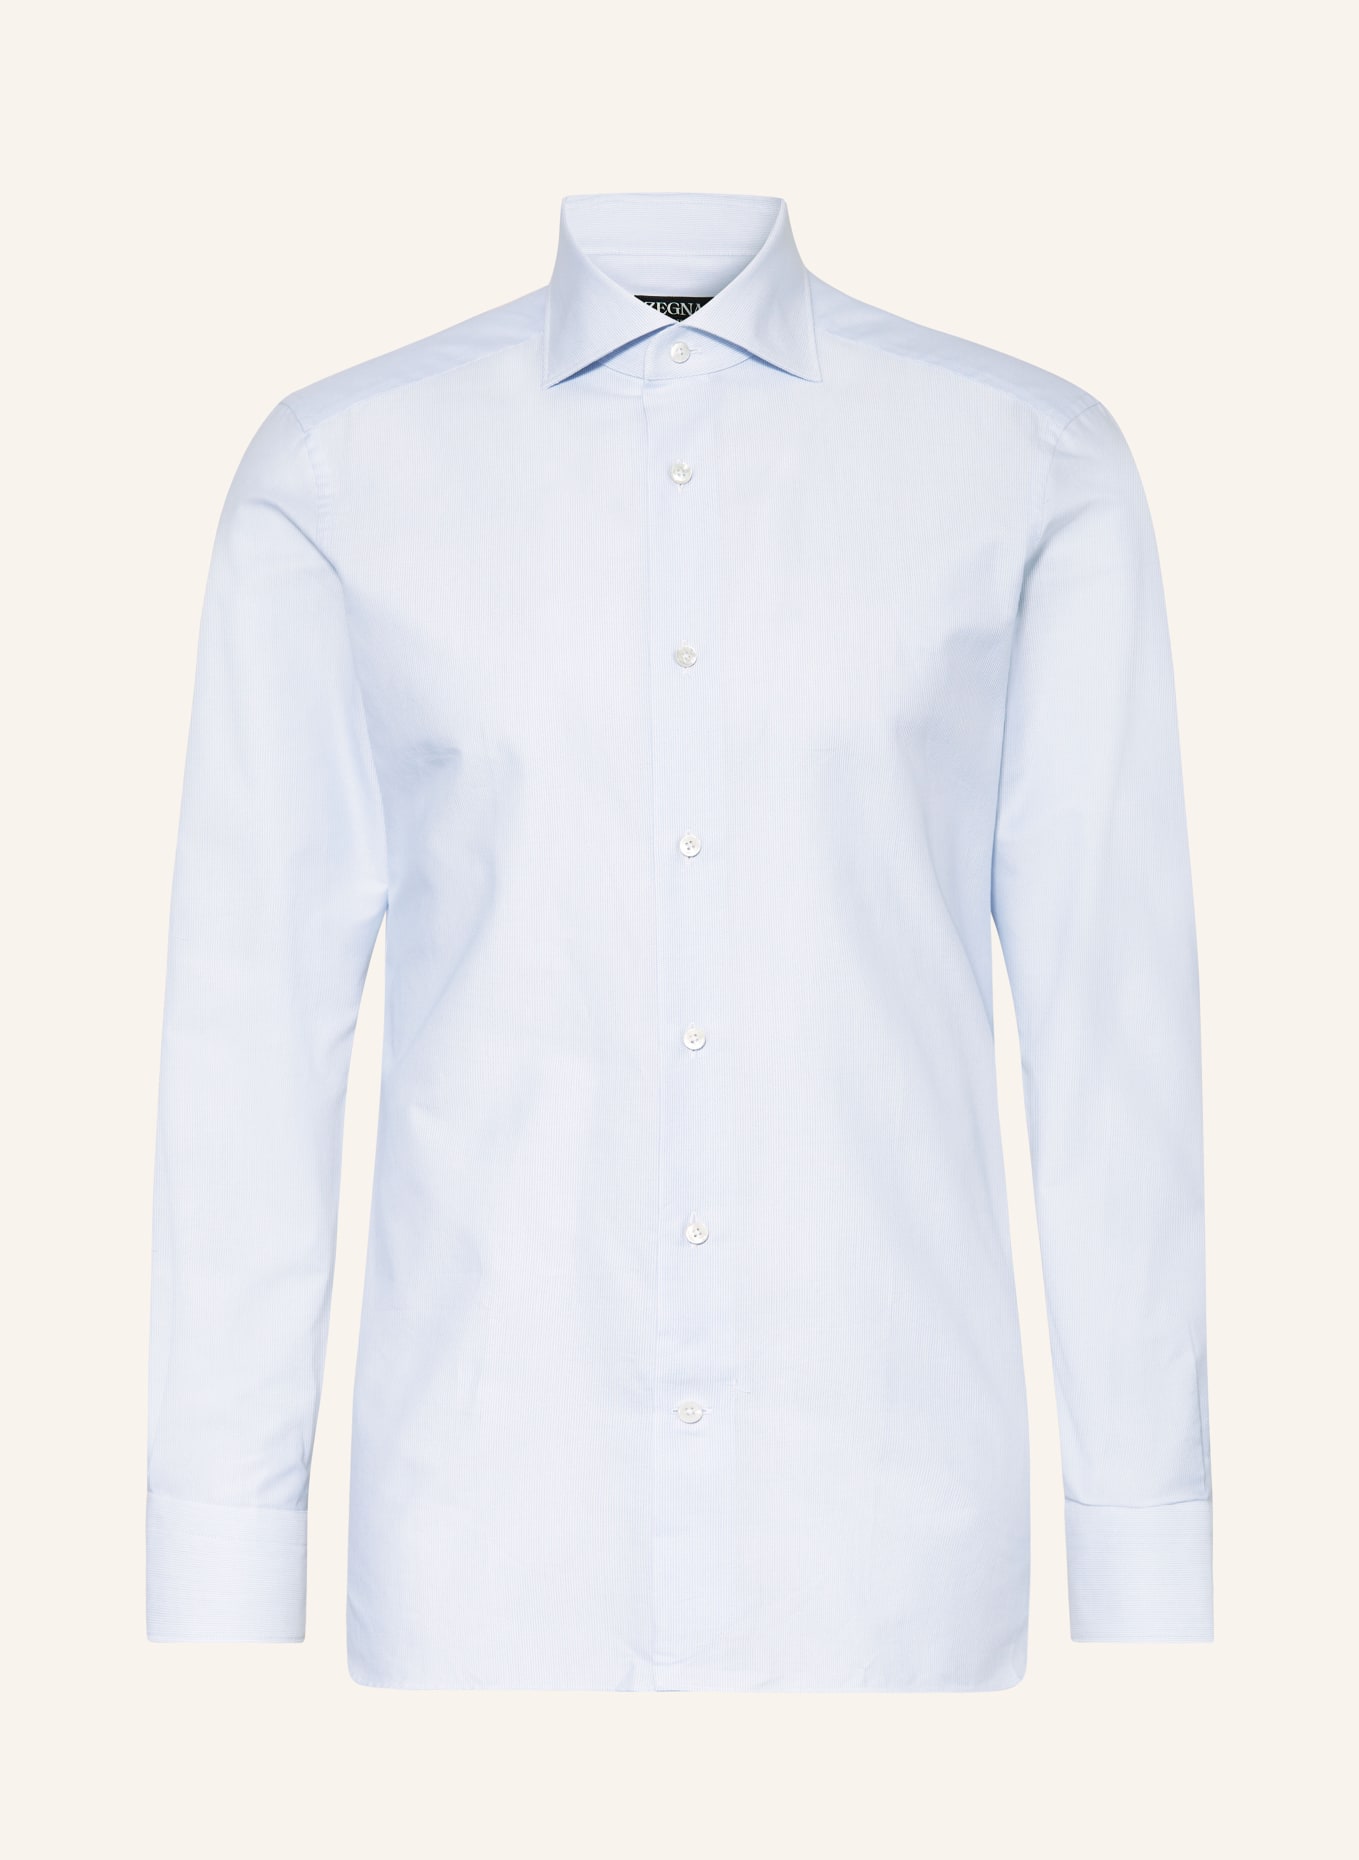 ZEGNA Shirt regular fit, Color: LIGHT BLUE (Image 1)